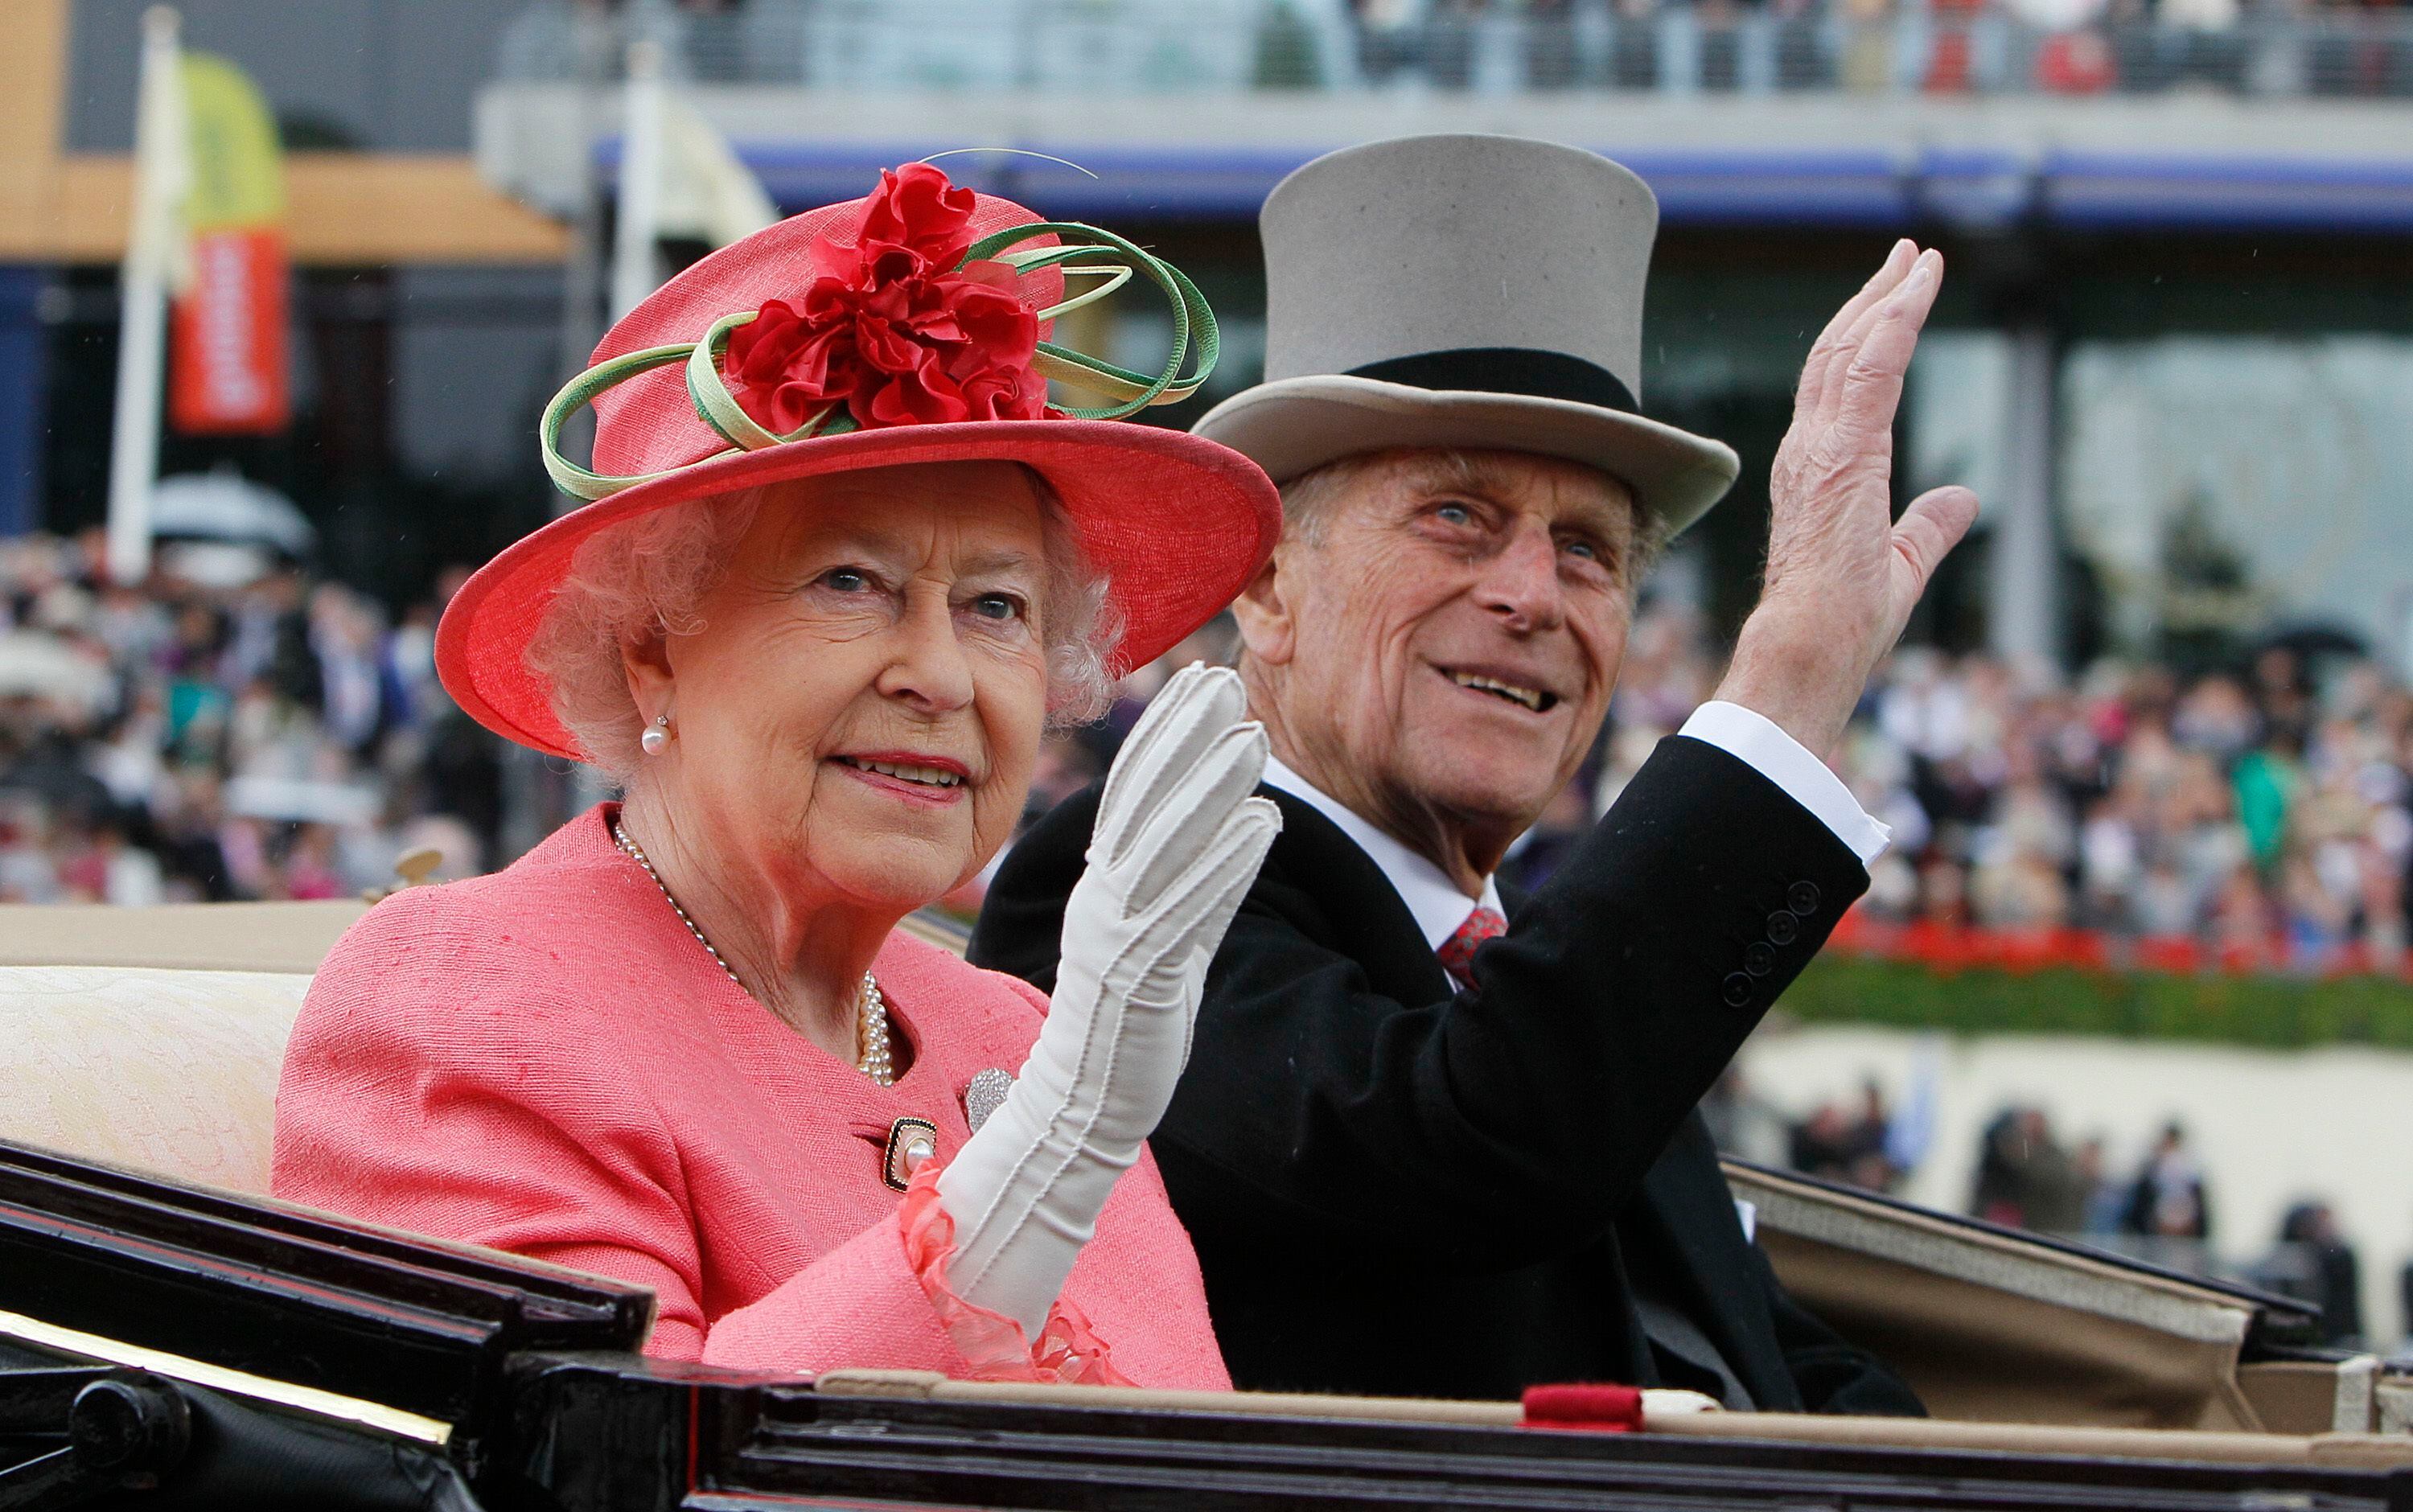 Queen Elizabeth marking 95th birthday in low-key fashion